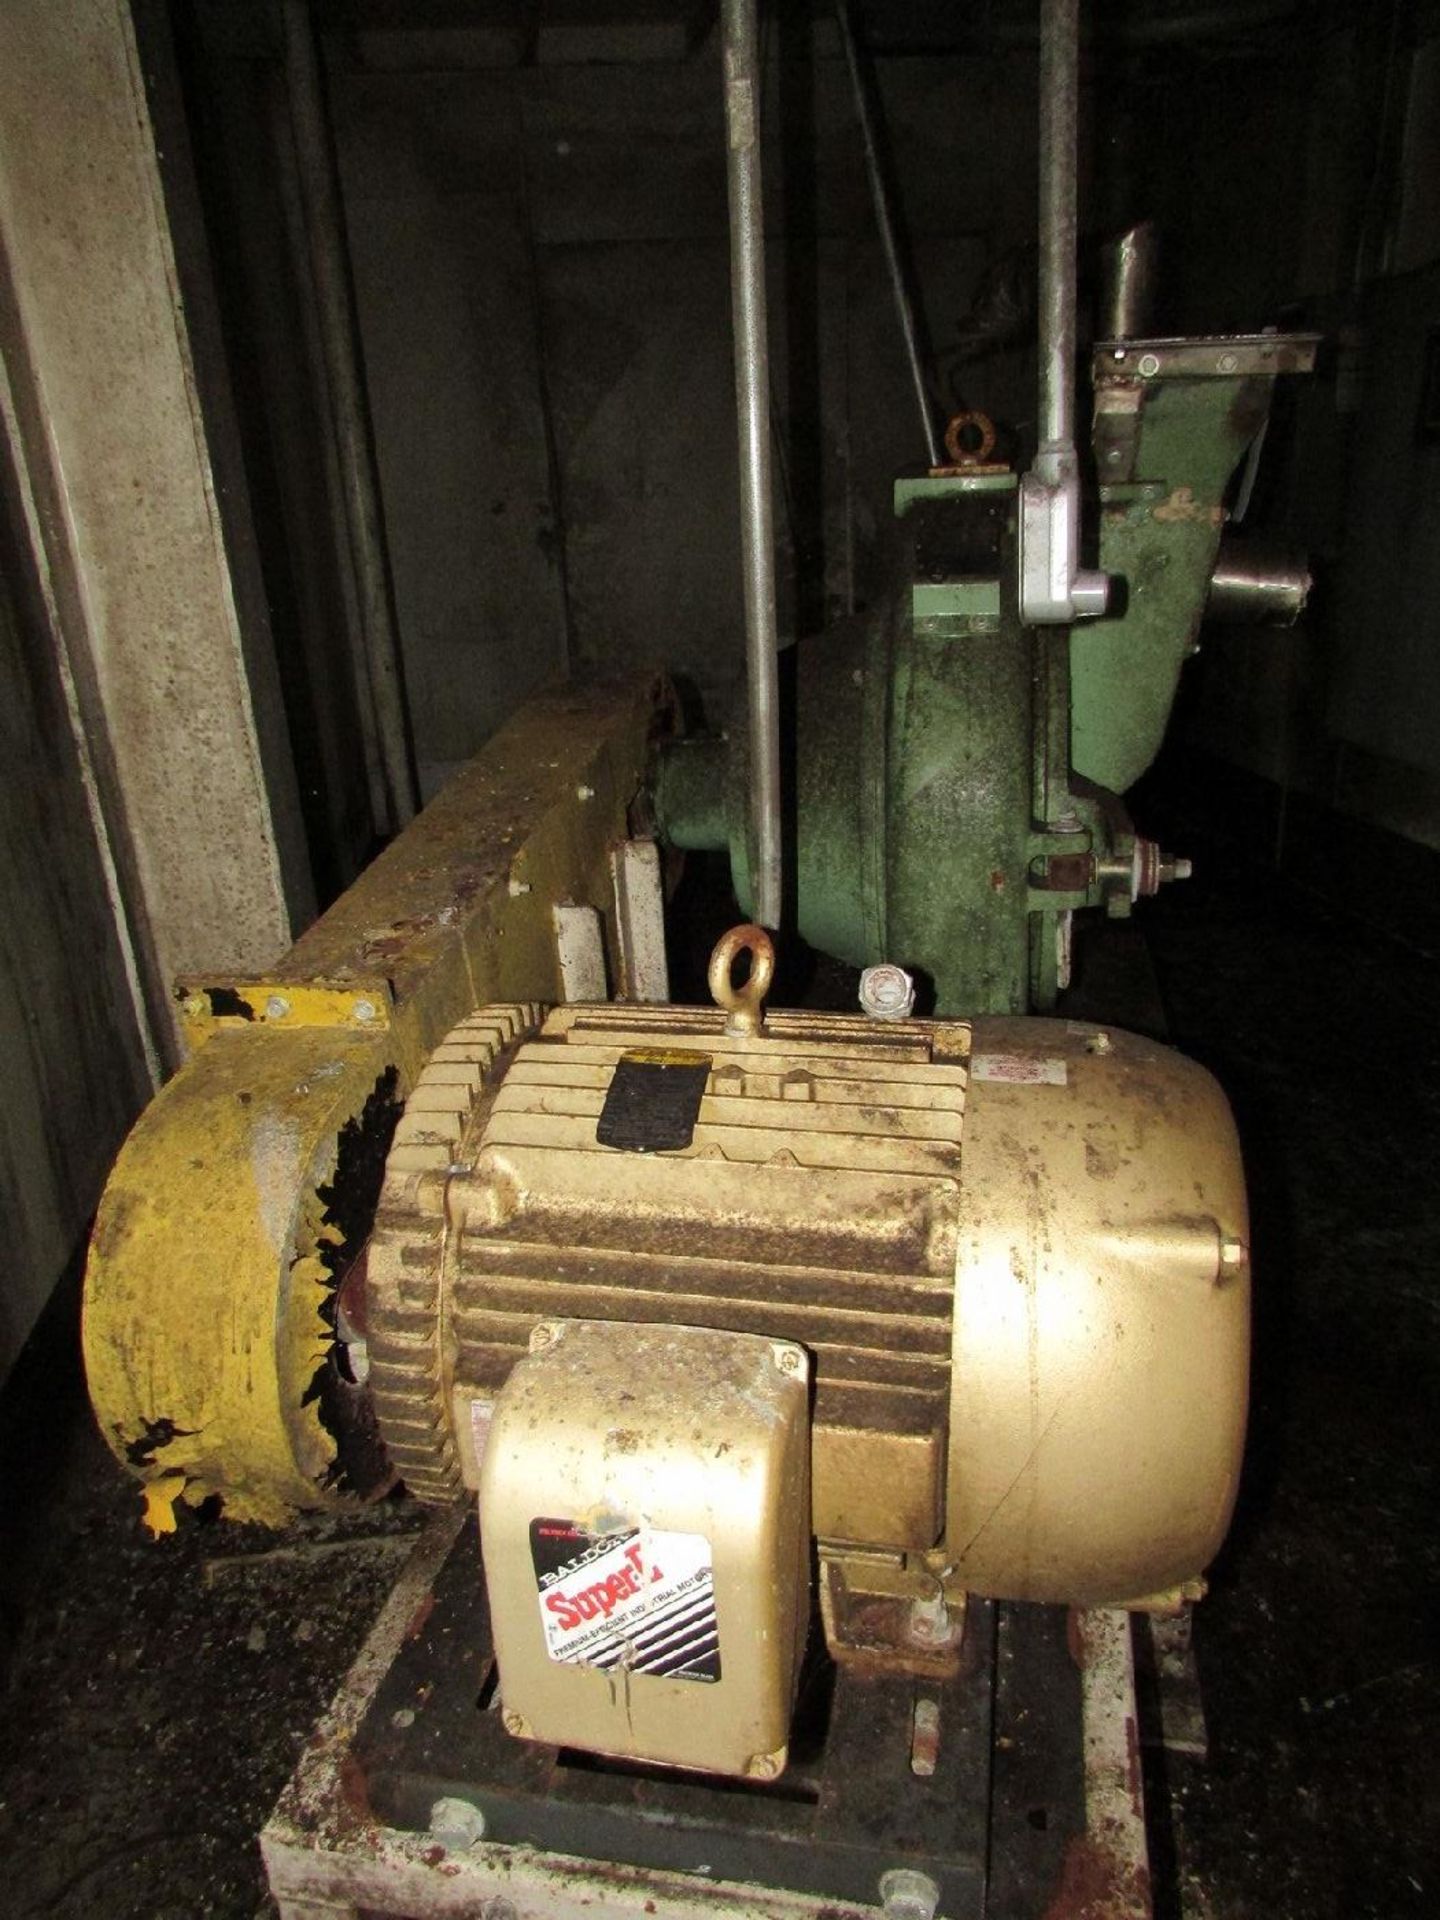 Italo Danioni-Milano Model 524 Pin Mill (Processing) - Image 5 of 6